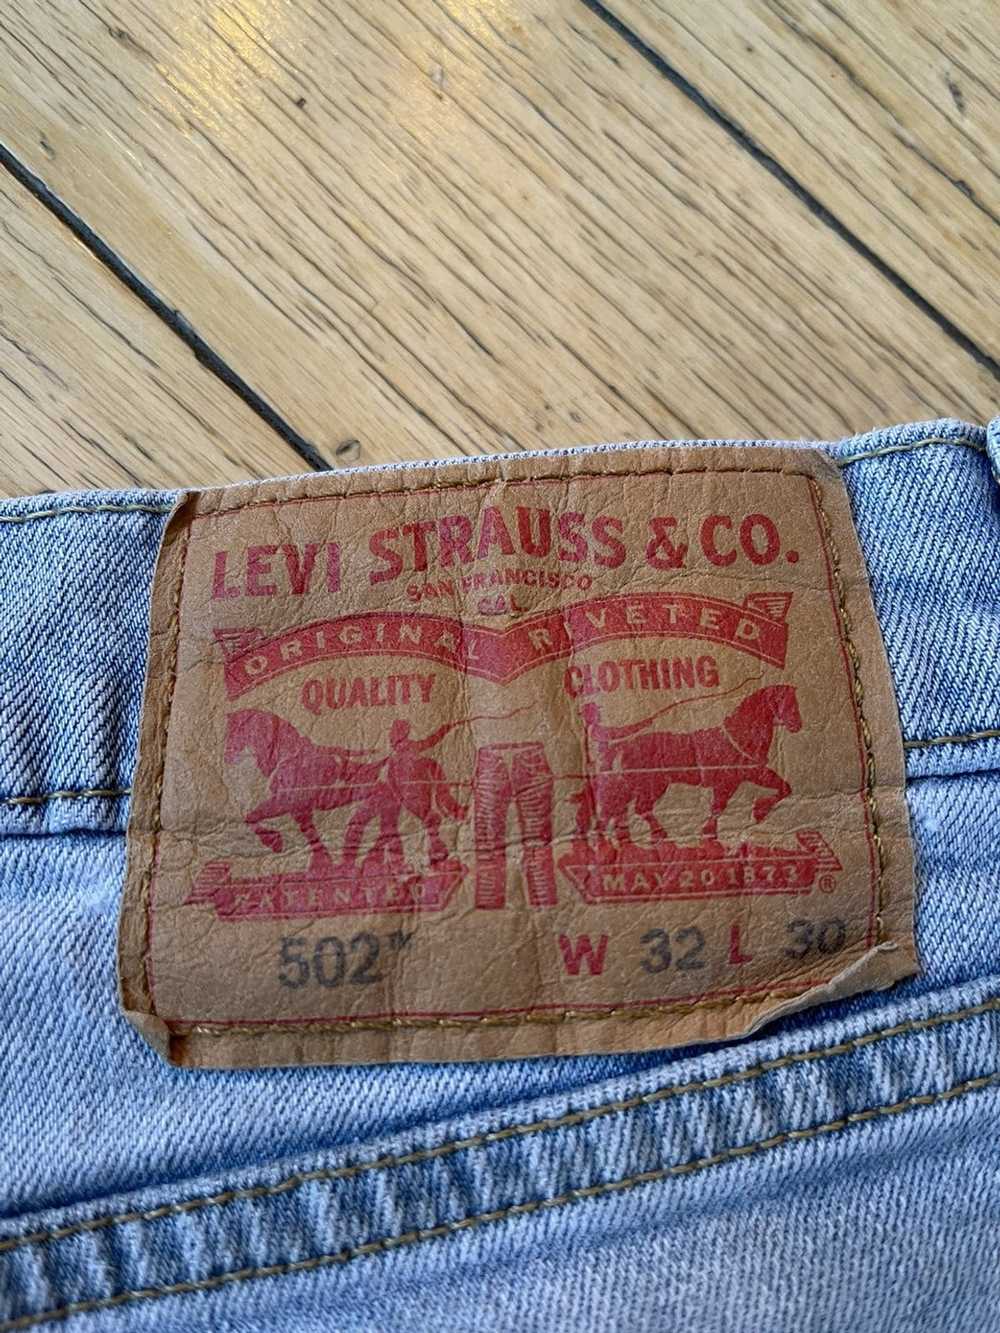 Levi's Vintage Light Wash Levi’s 502 Jeans - image 3